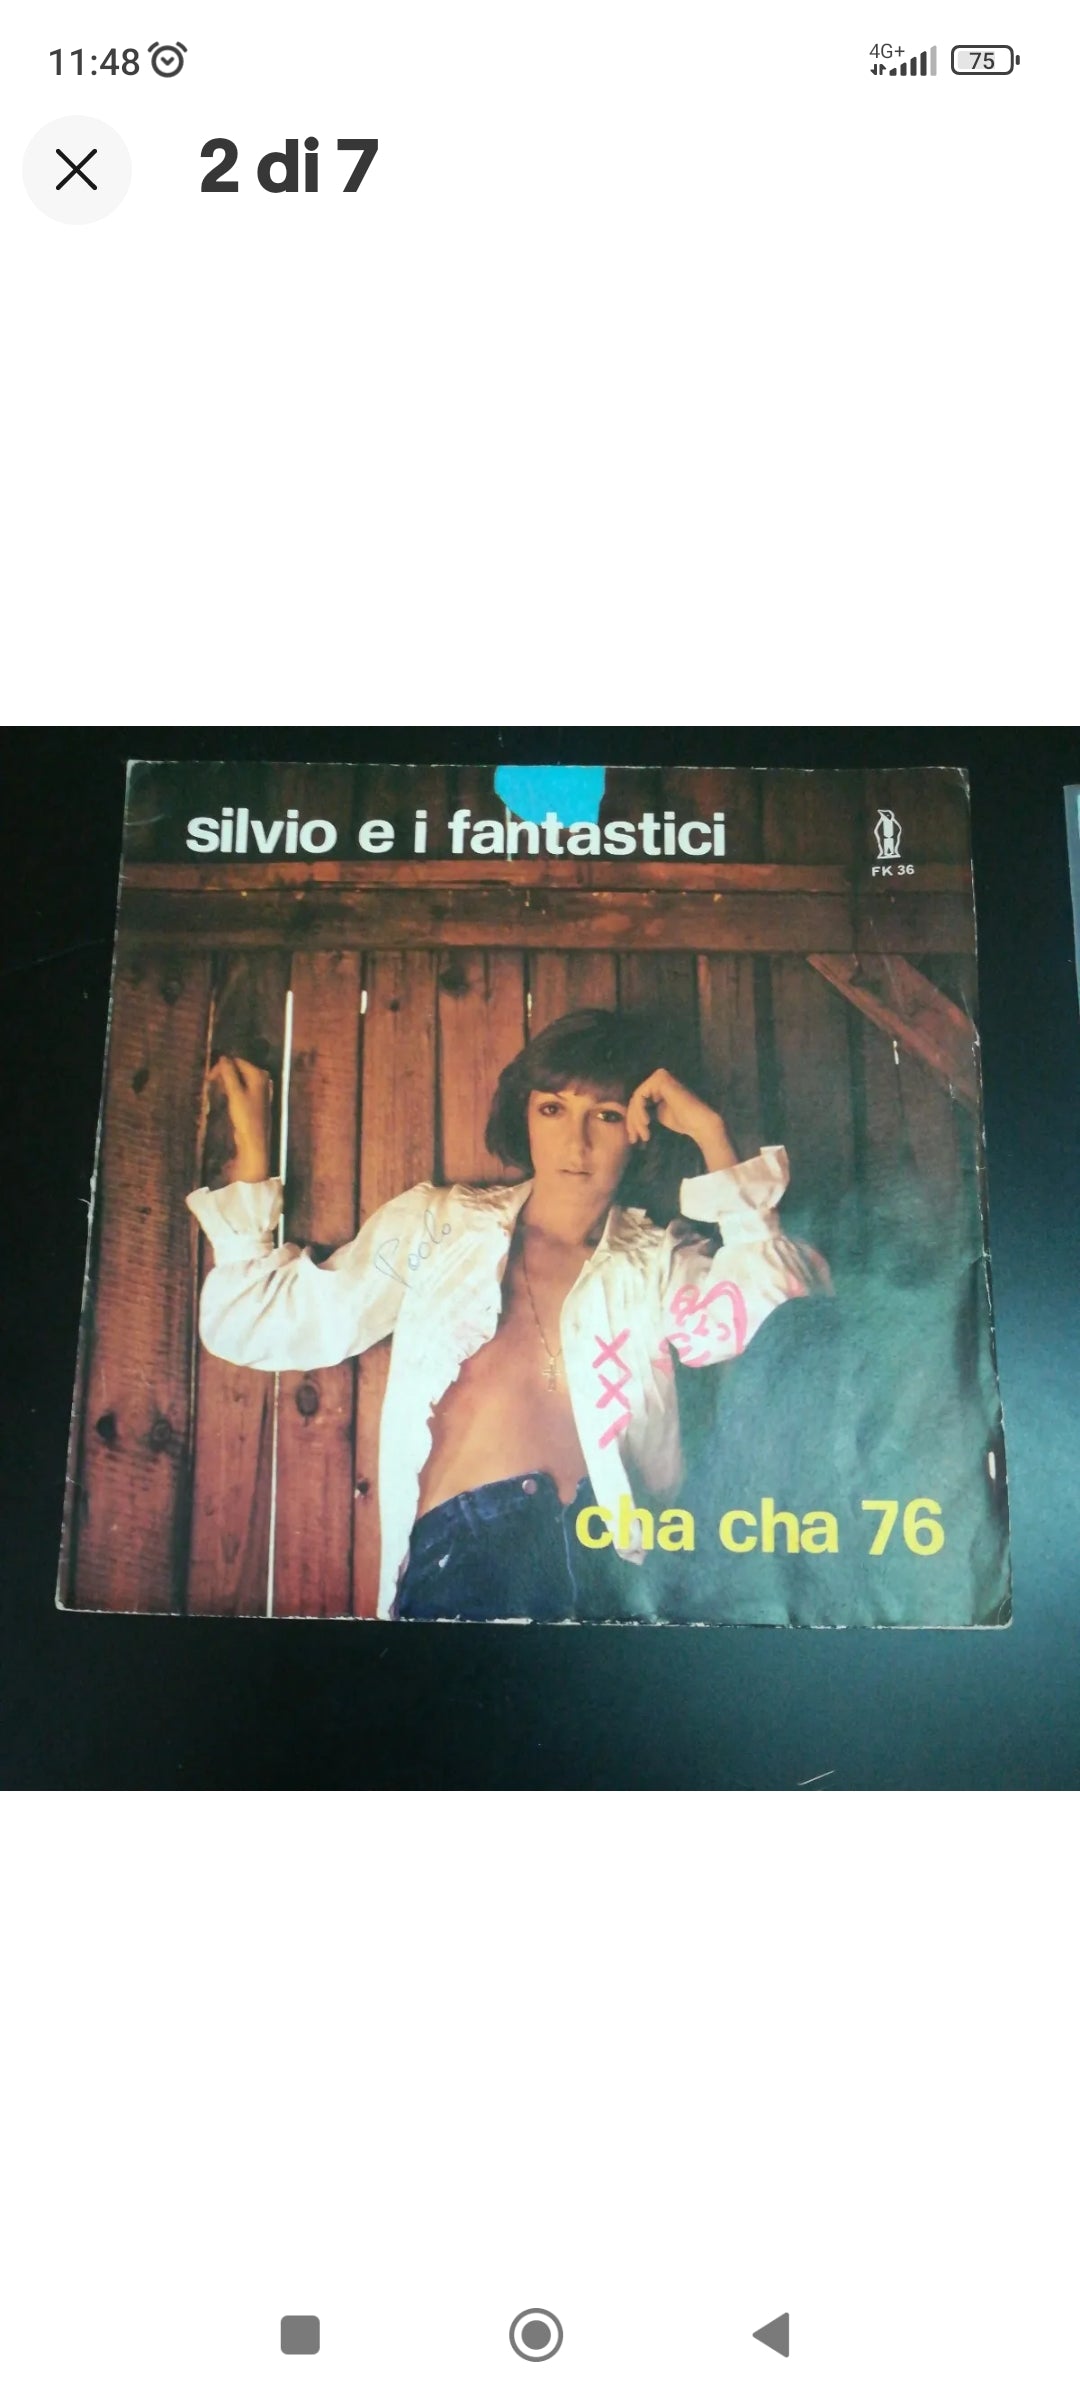 45 giri "Cha Cha 76 /Metti Musica Nei Jeans" Silvio E I Fantastici